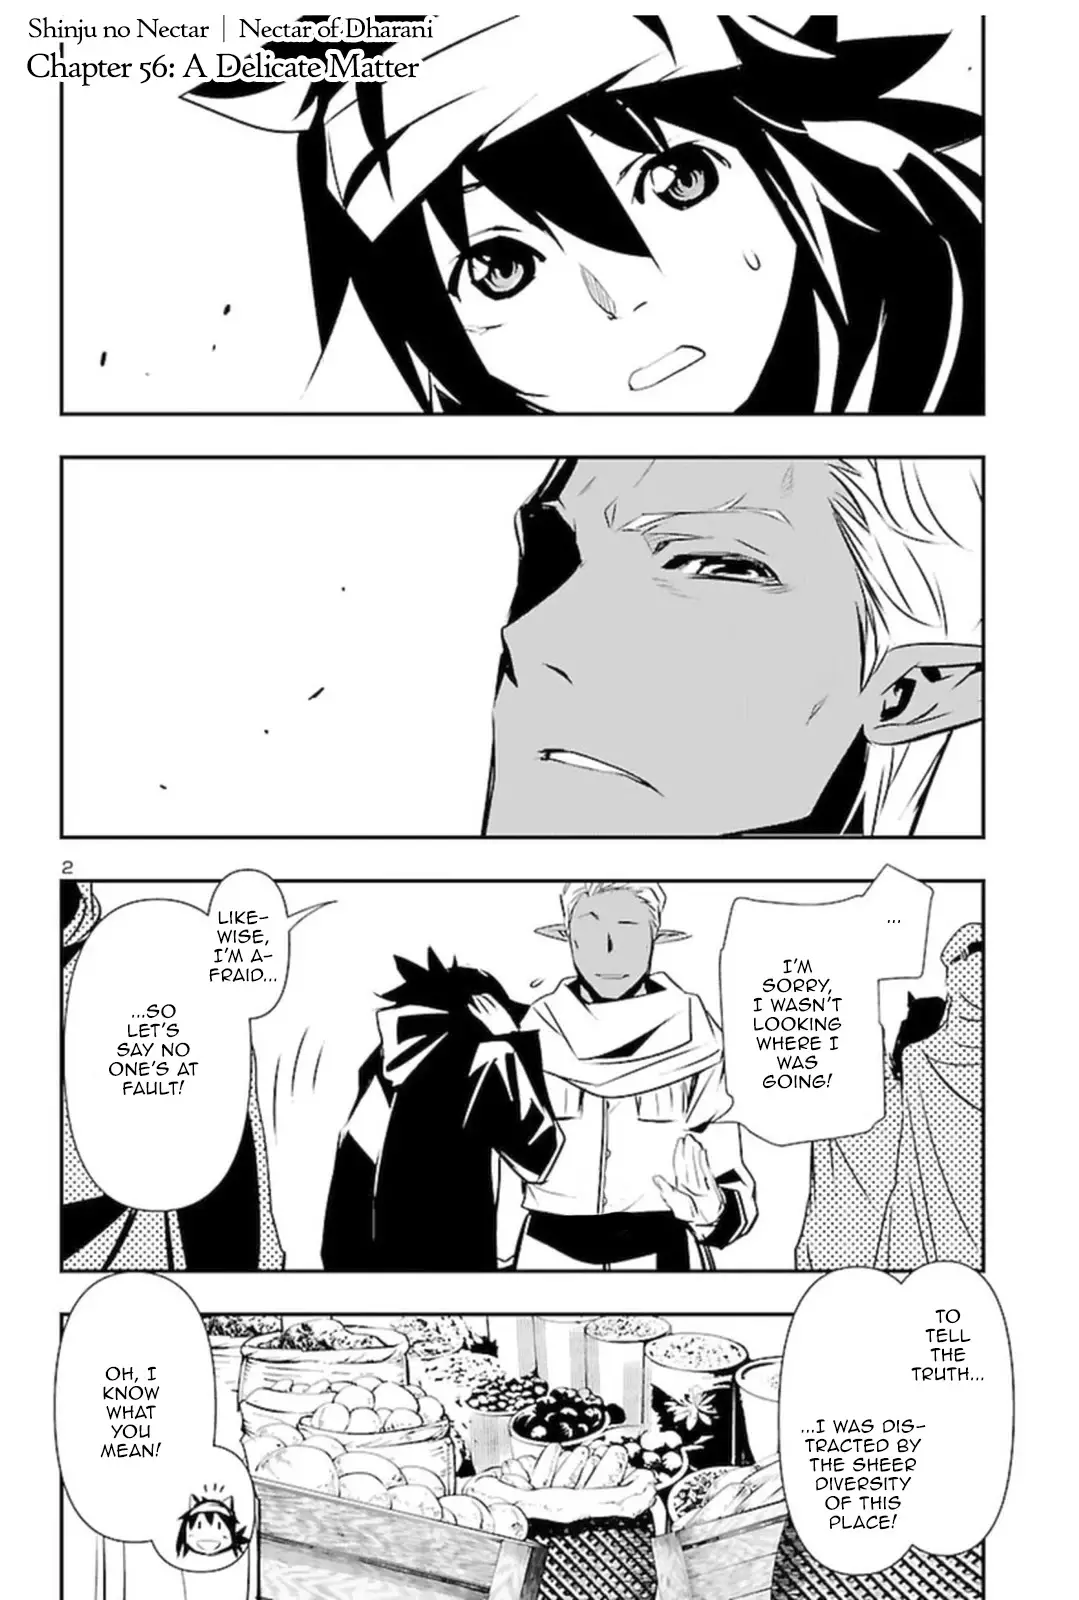 Shinju no Nectar - 56 page 1